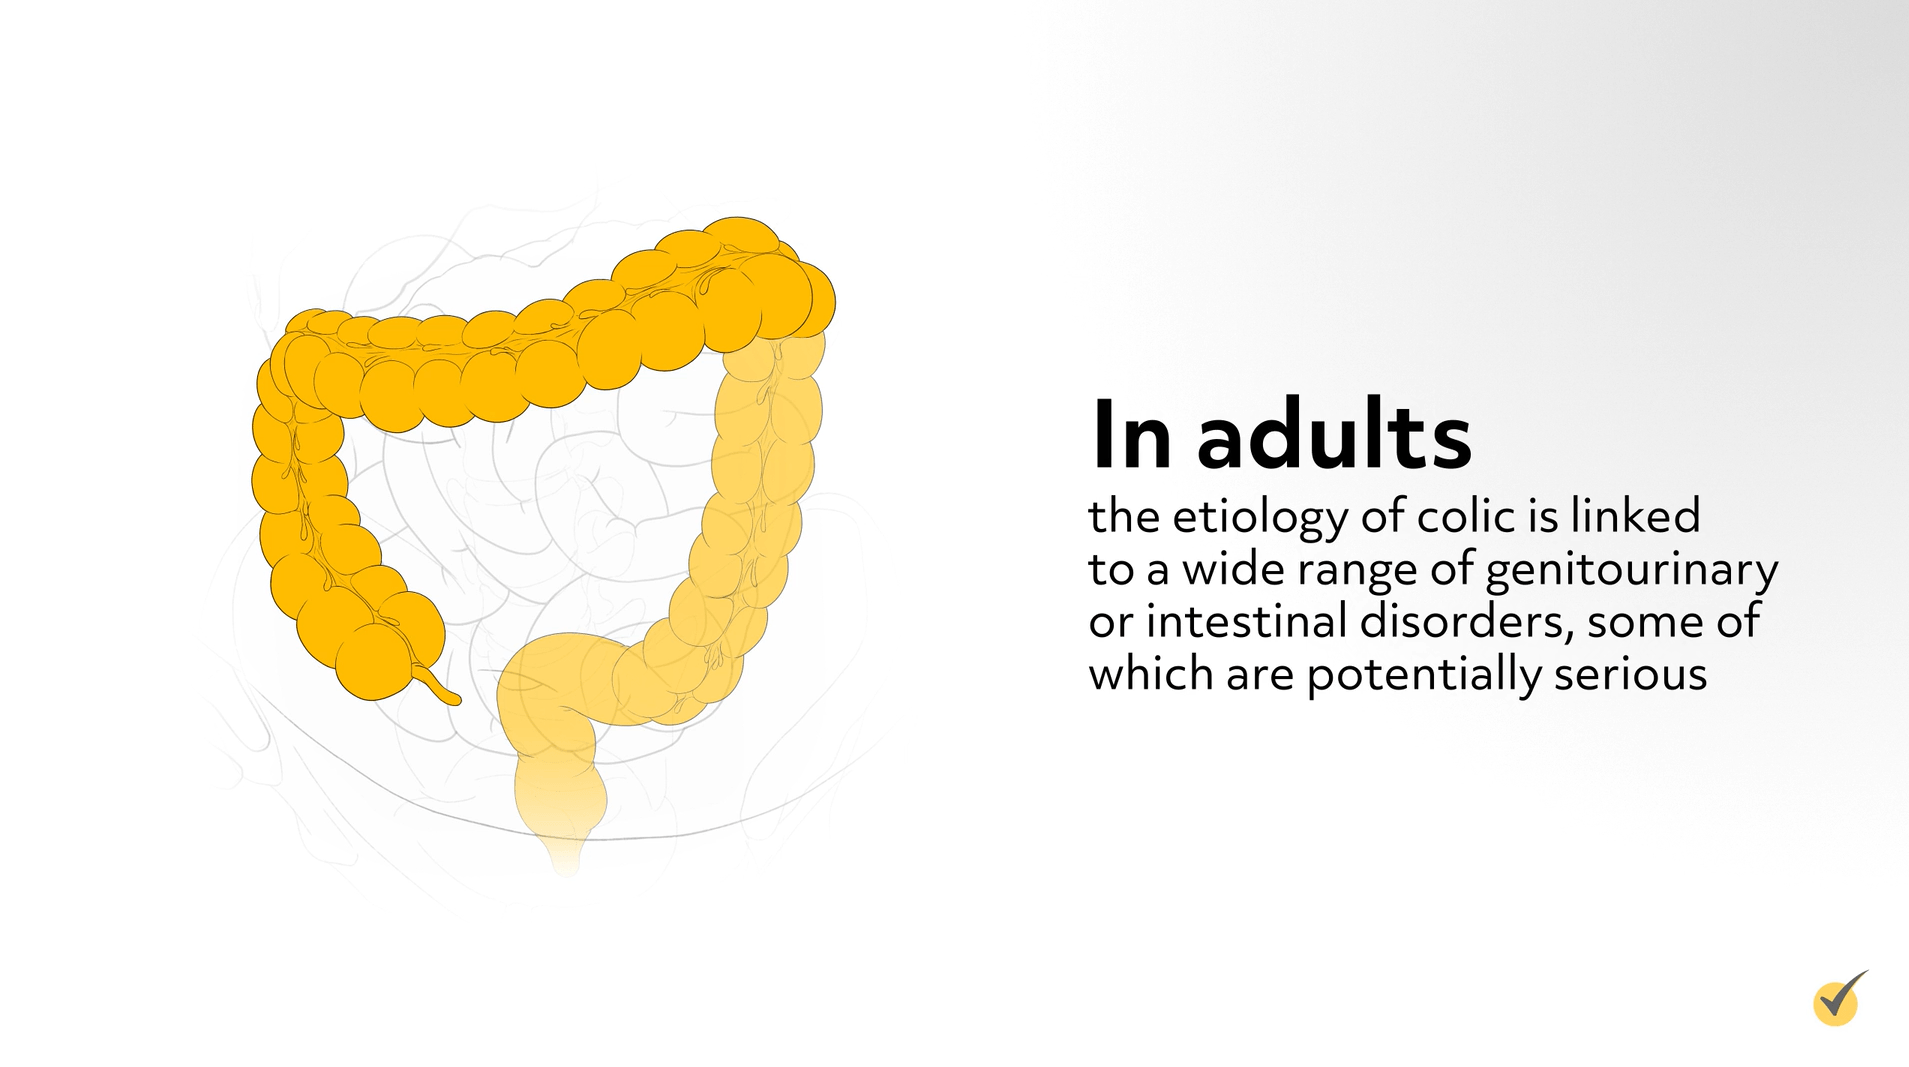 image of large intestine